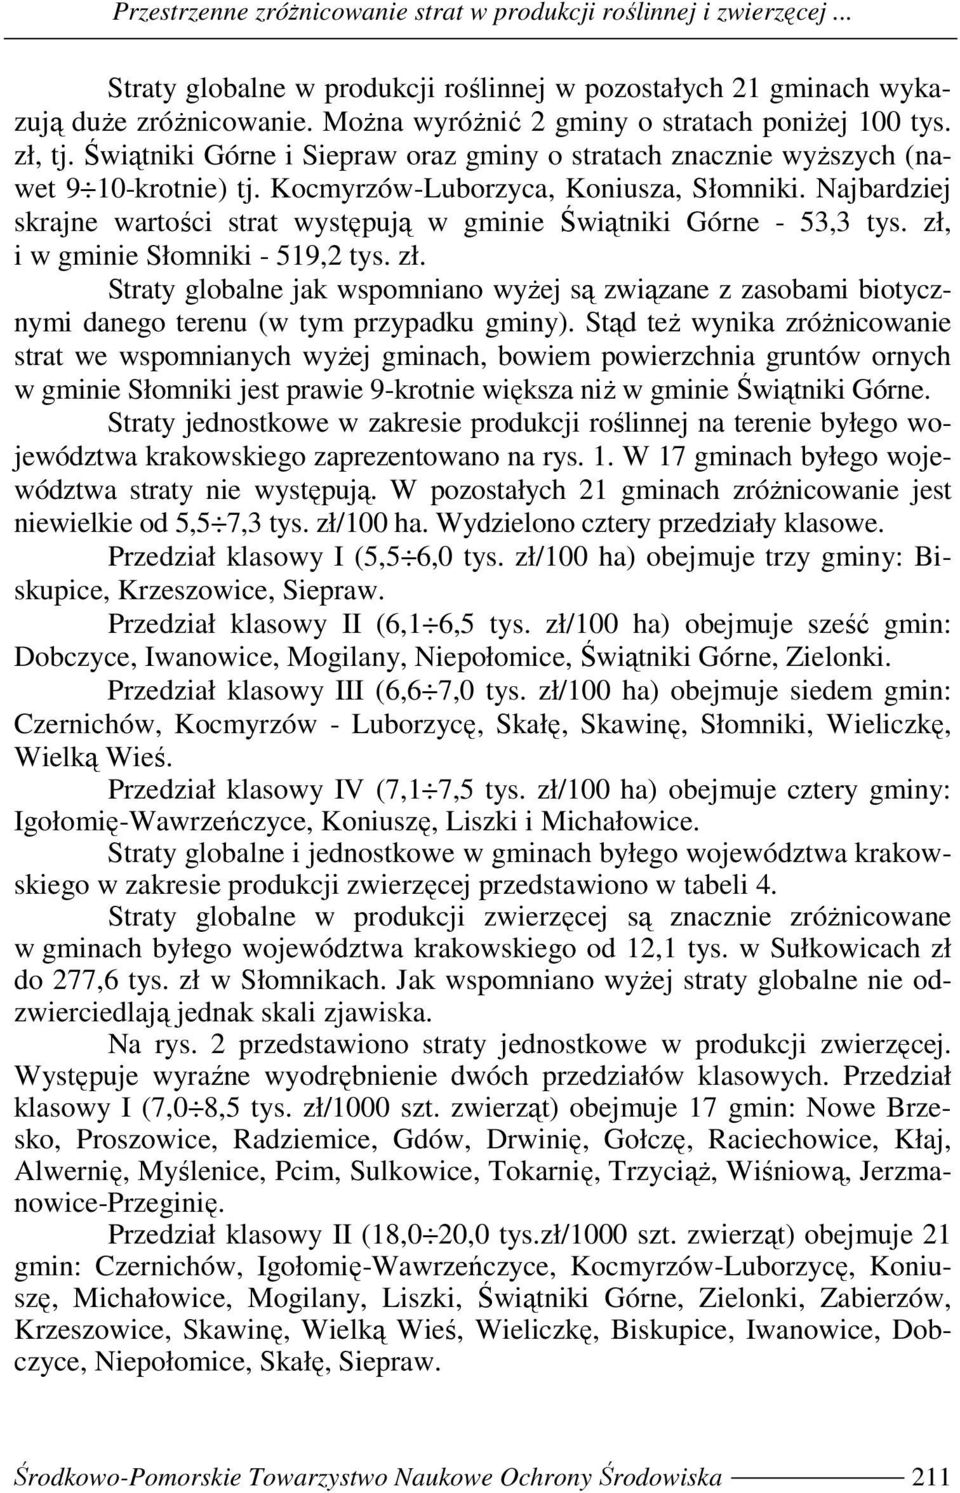 Najbadziej skajne watości stat występują w gminie Świątniki Góne - 53,3 tys. zł, i w gminie Słomniki - 519,2 tys. zł. Staty globalne jak wspomniano wyŝej są związane z zasobami biotycznymi danego teenu (w tym pzypadku gminy).